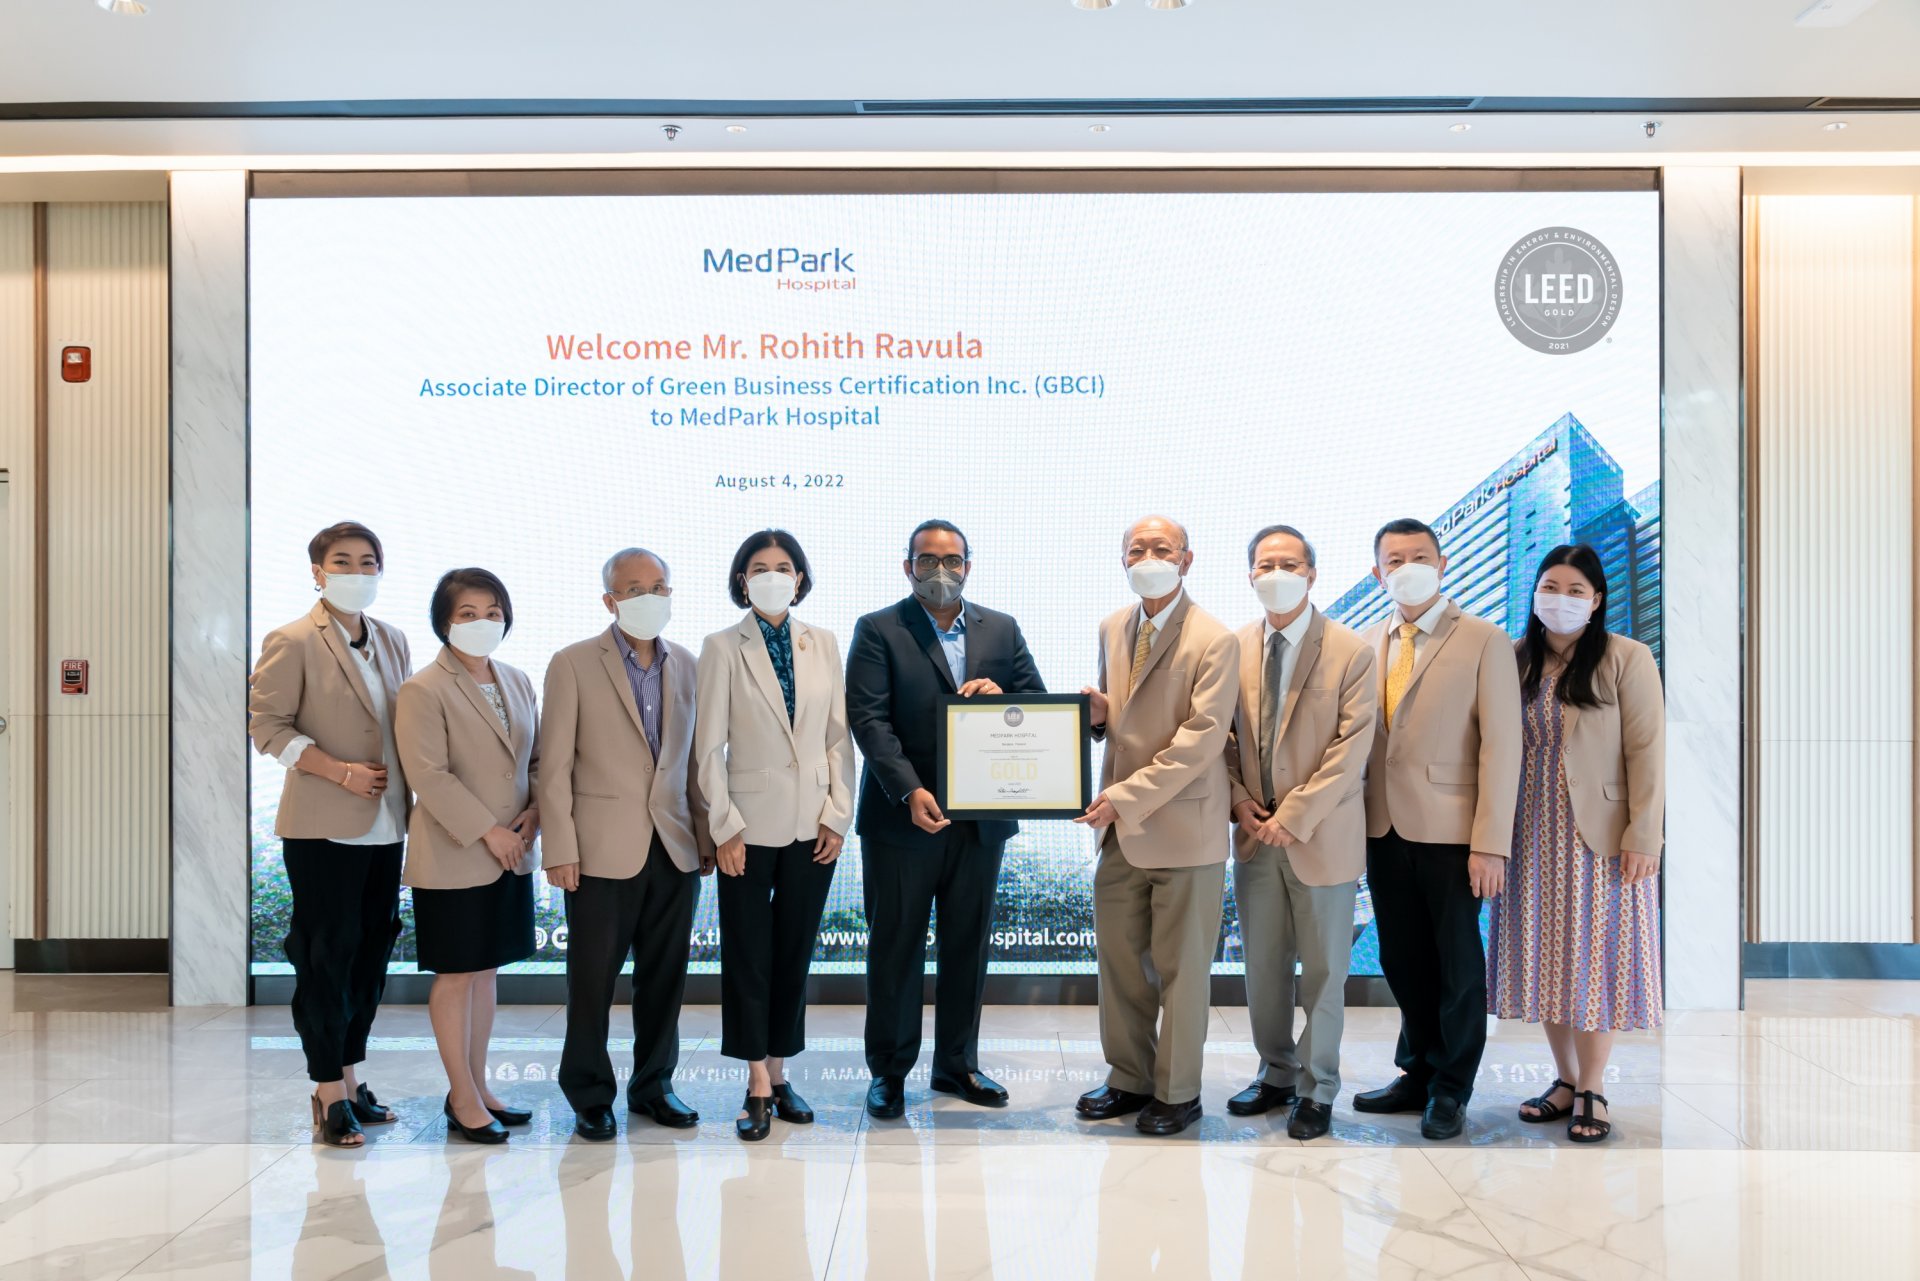 โรงพยาบาลเมดพาร์คได้ GOLD LEED Certification เวอร์ชั่น 4 รายแรกในประเทศไทย ก้าวสู่อาคารสีเขียวมาตรฐานโลก